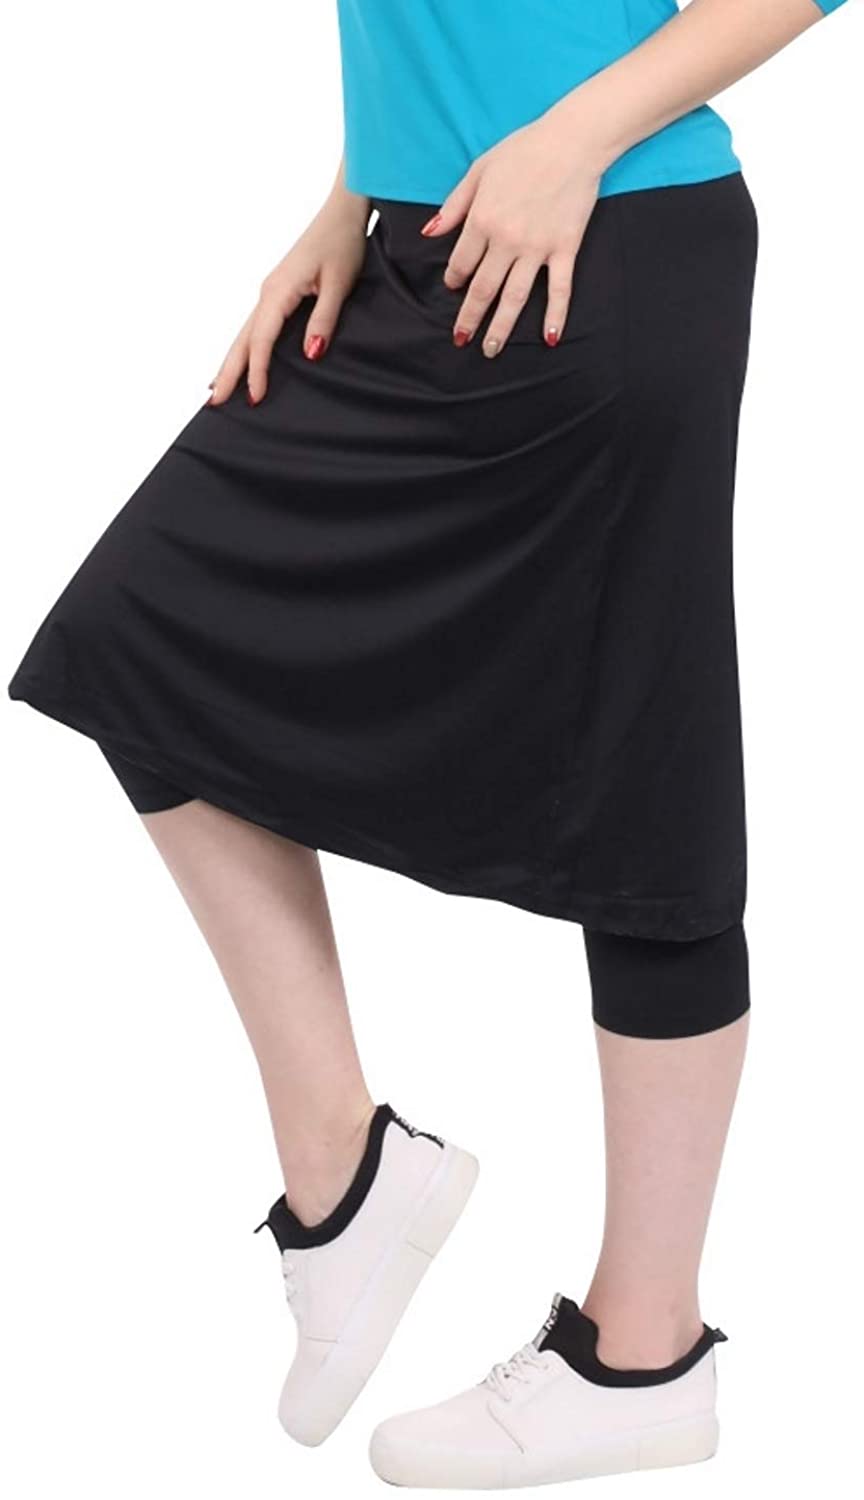 Kosher Casual Women's Knee Length Sports Skirt with Leggings - Mid ...